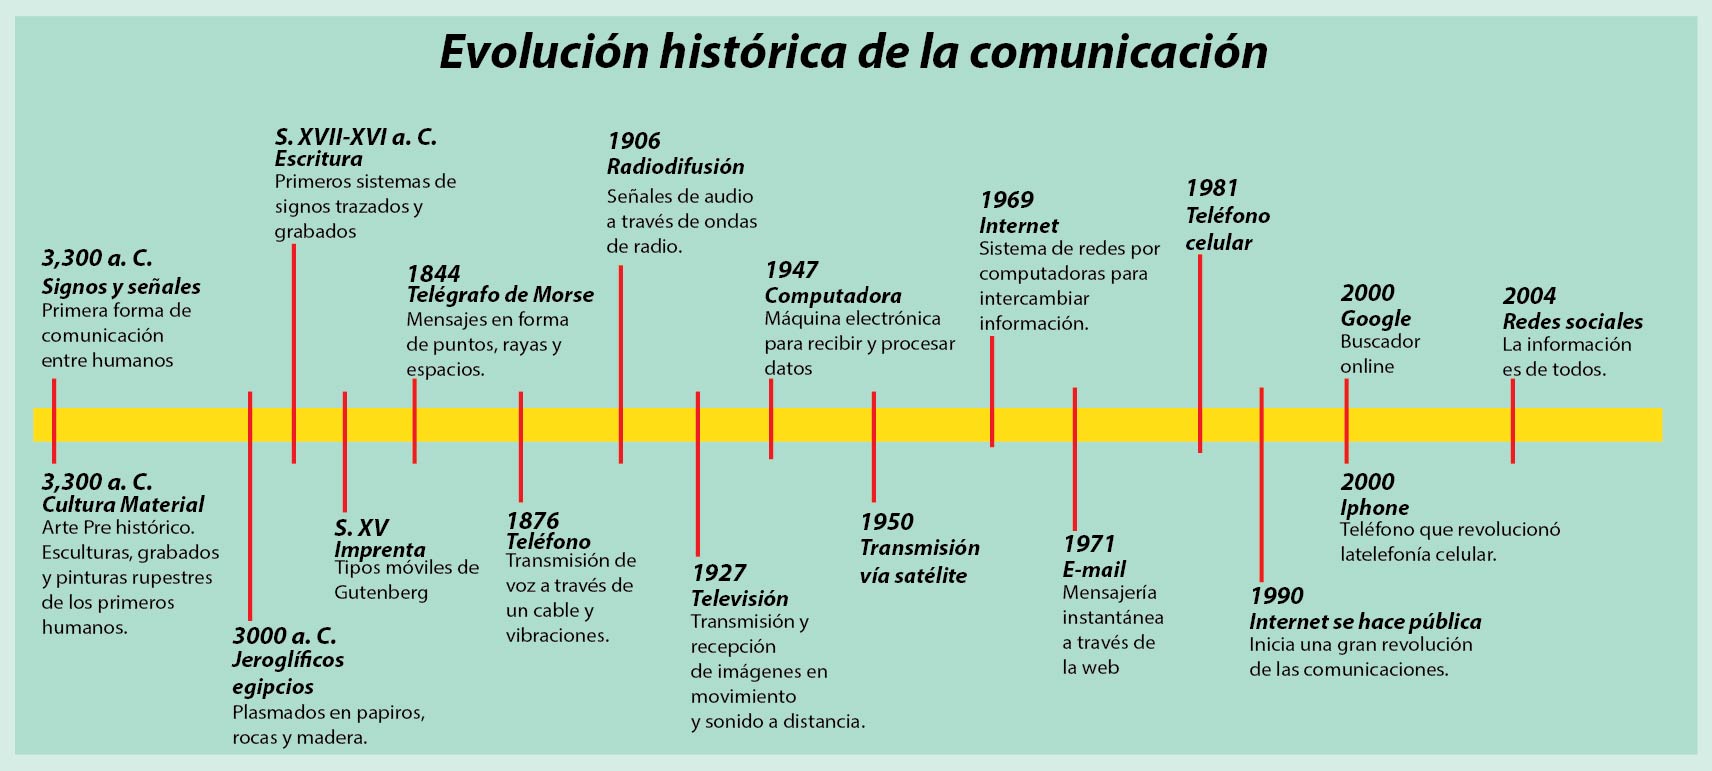 Evolución histórica de la comunicación. - Profe